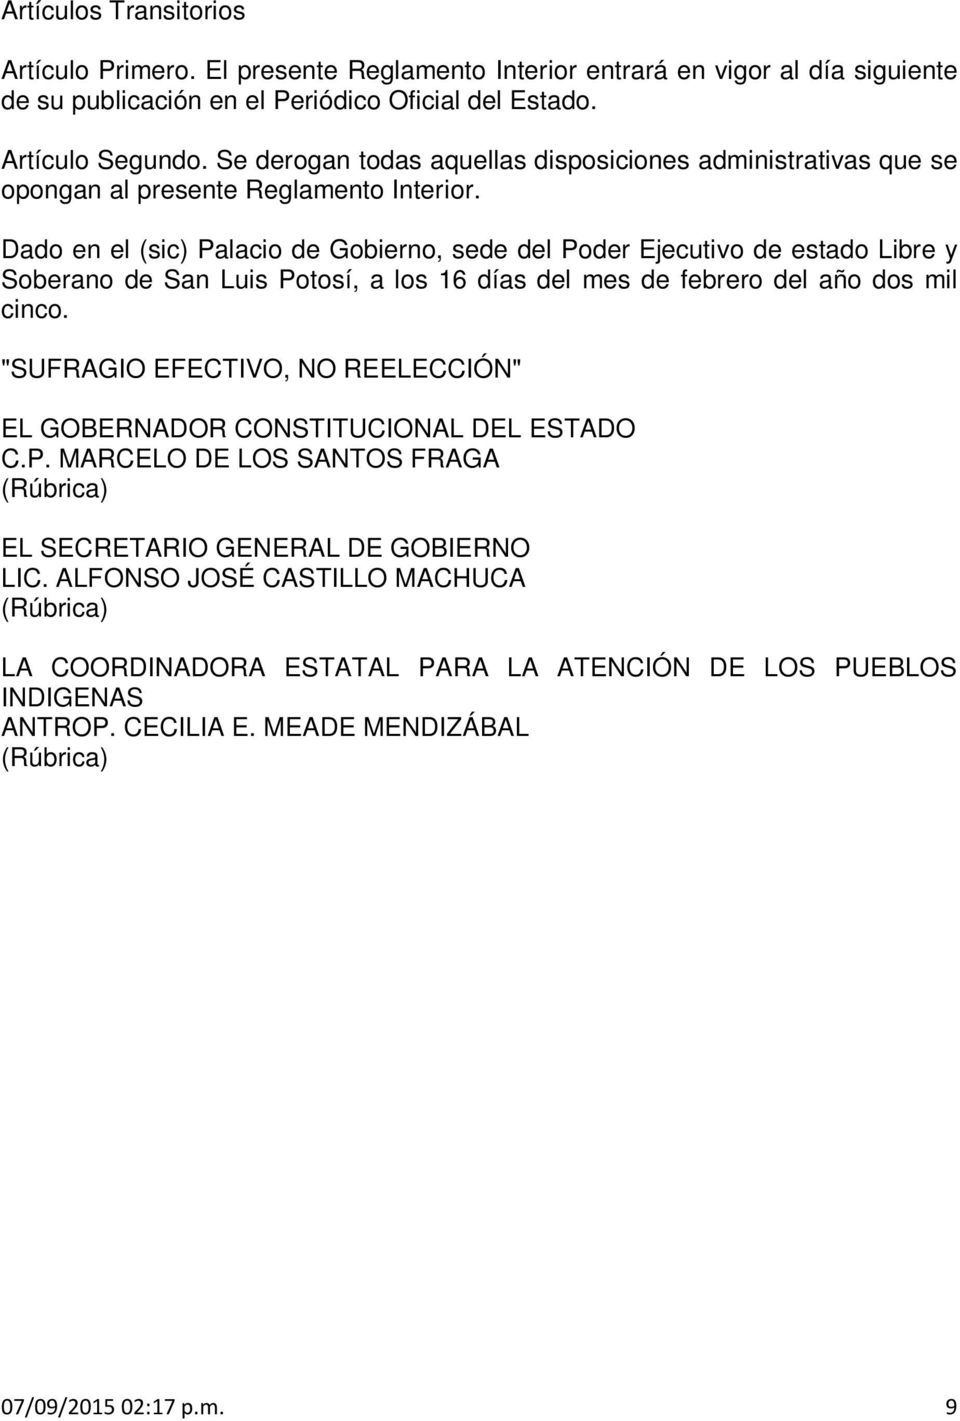 Dado en el (sic) Palacio de Gobierno, sede del Poder Ejecutivo de estado Libre y Soberano de San Luis Potosí, a los 16 días del mes de febrero del año dos mil cinco.